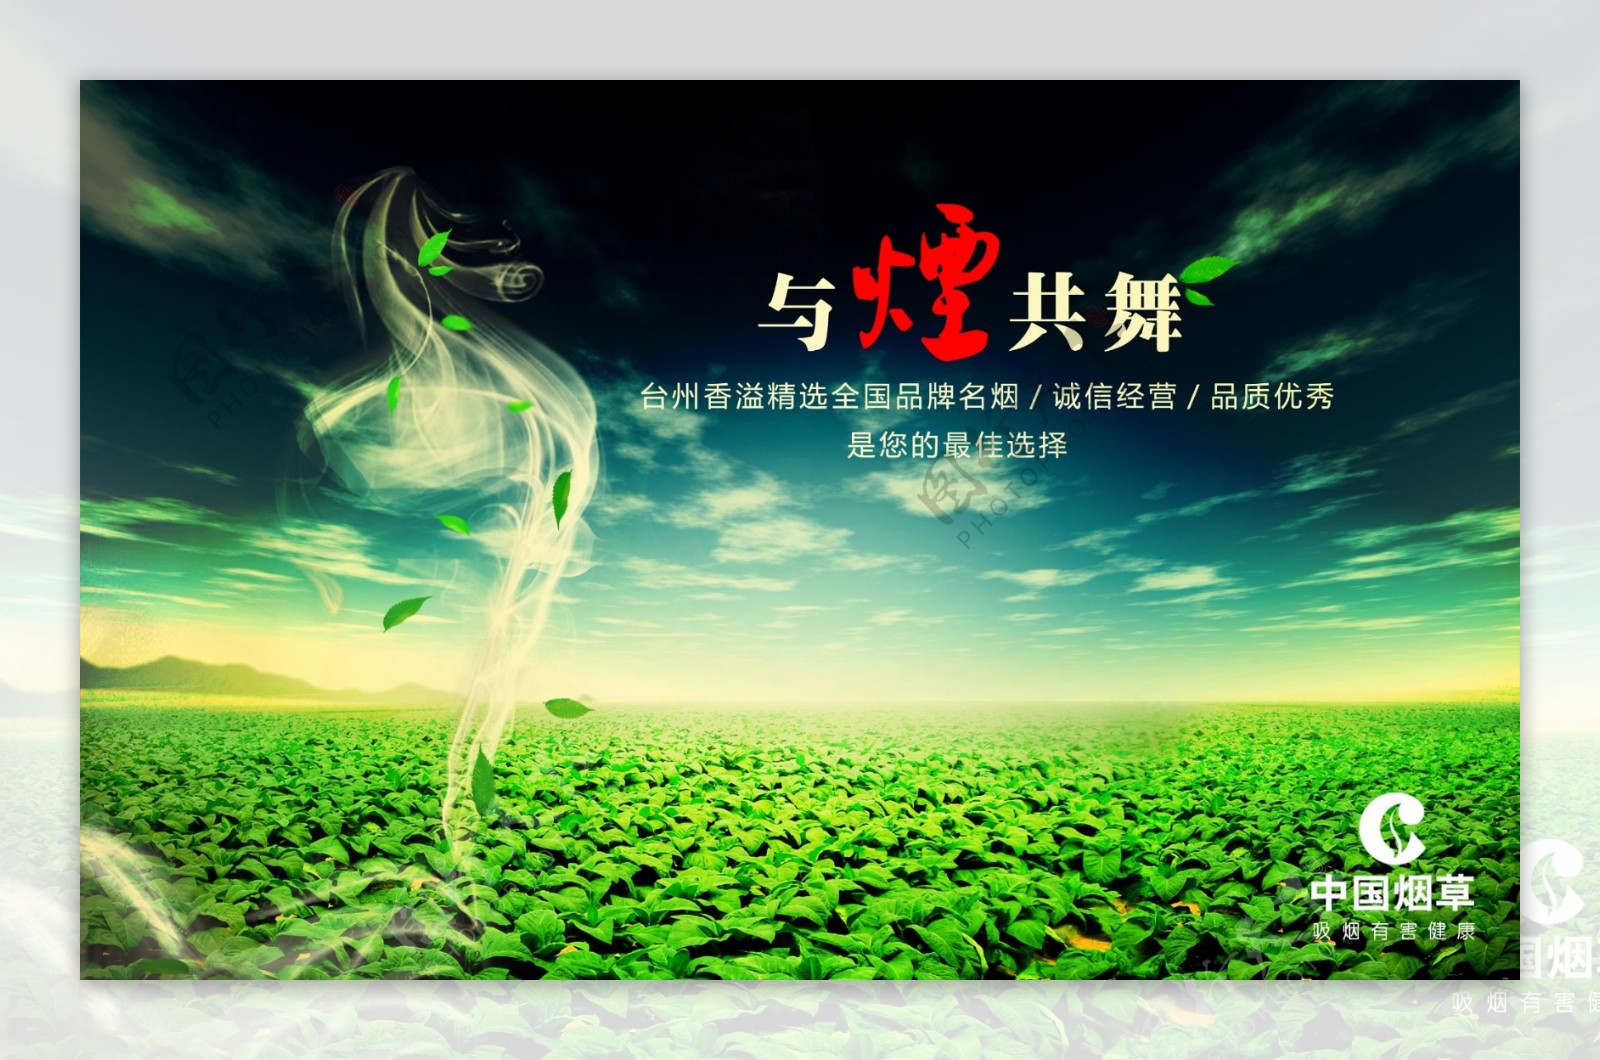 中国烟草公司广告海报画面